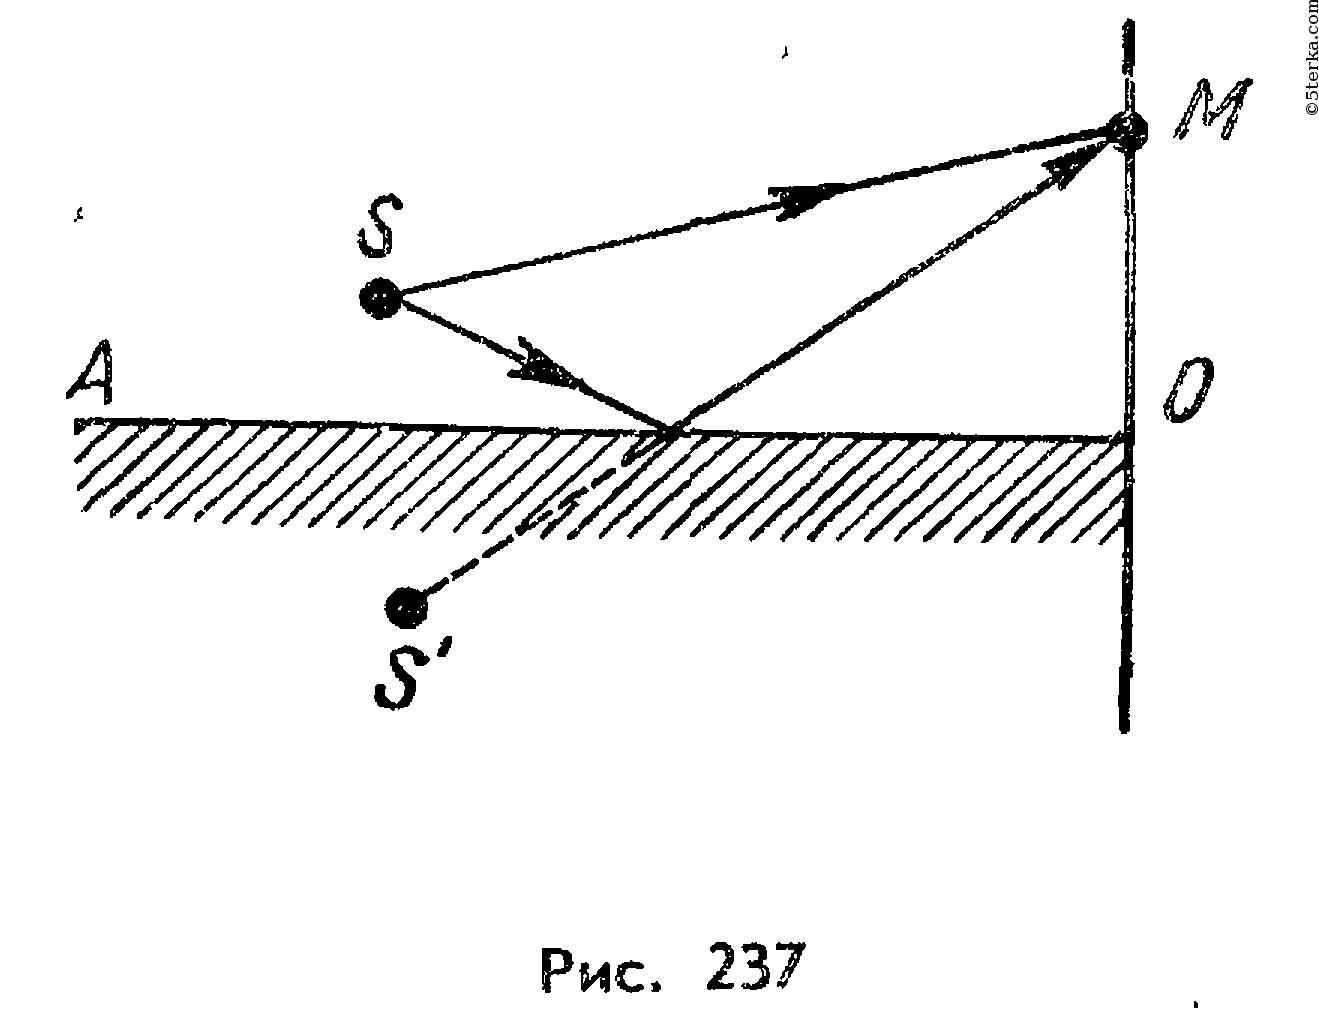 Показана интерференционная схема с бизеркалами френеля